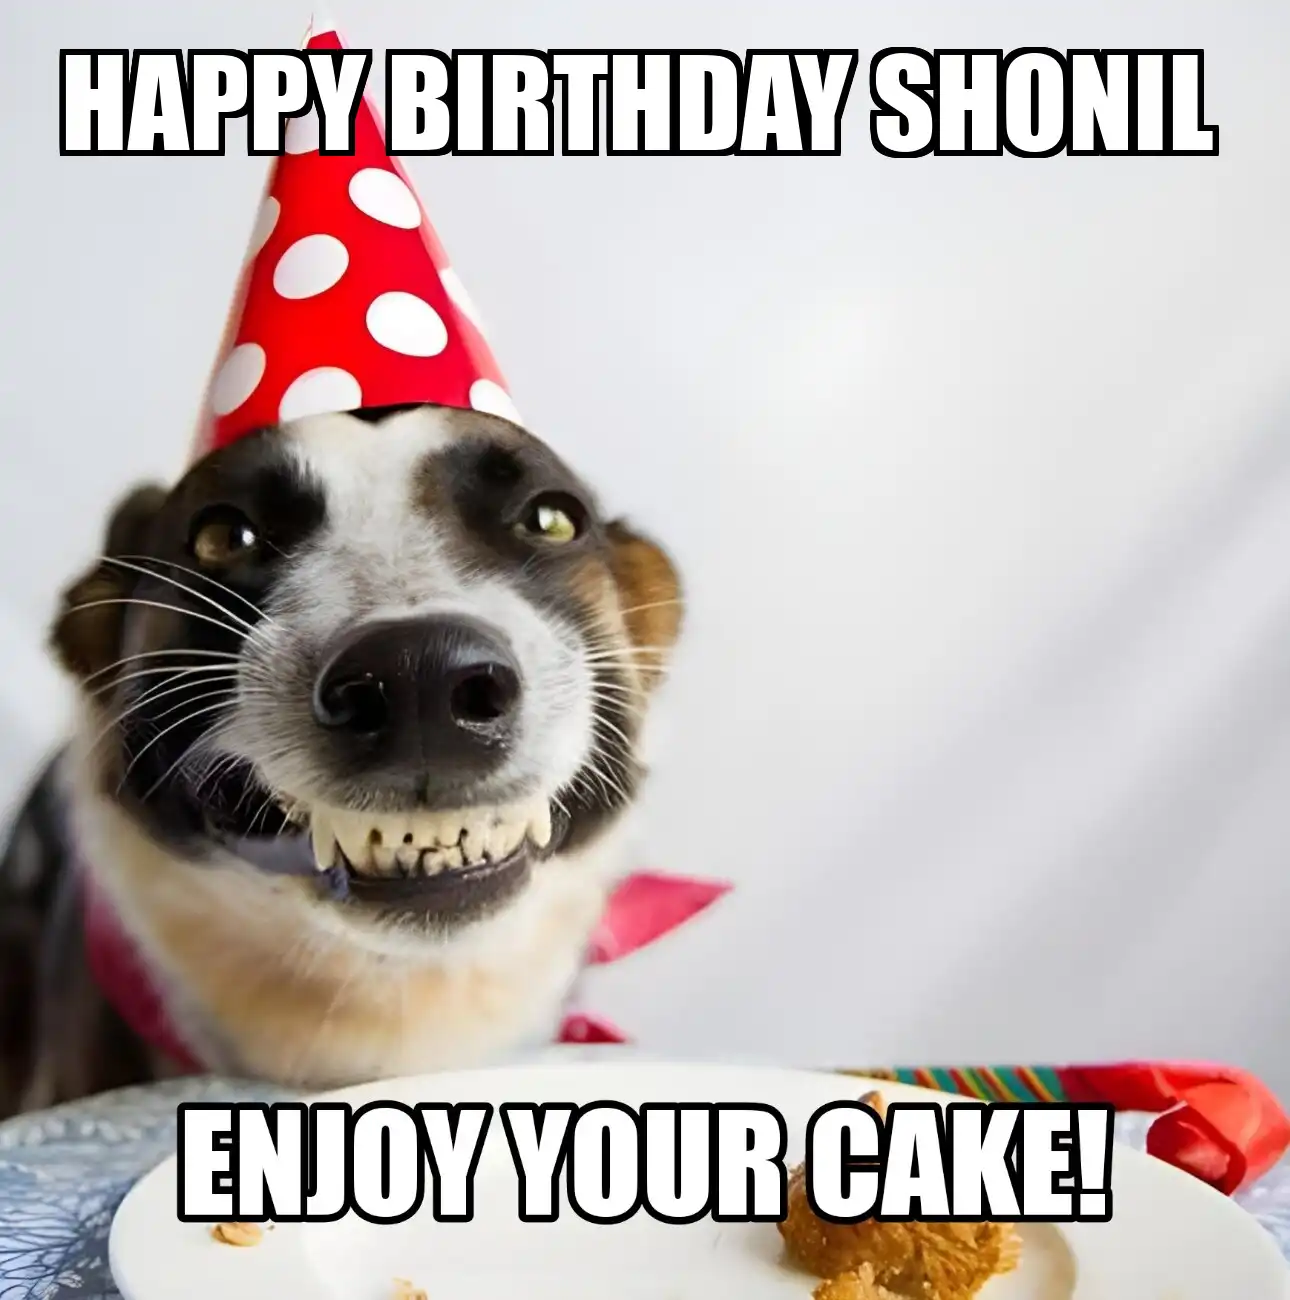 Happy Birthday Shonil Enjoy Your Cake Dog Meme